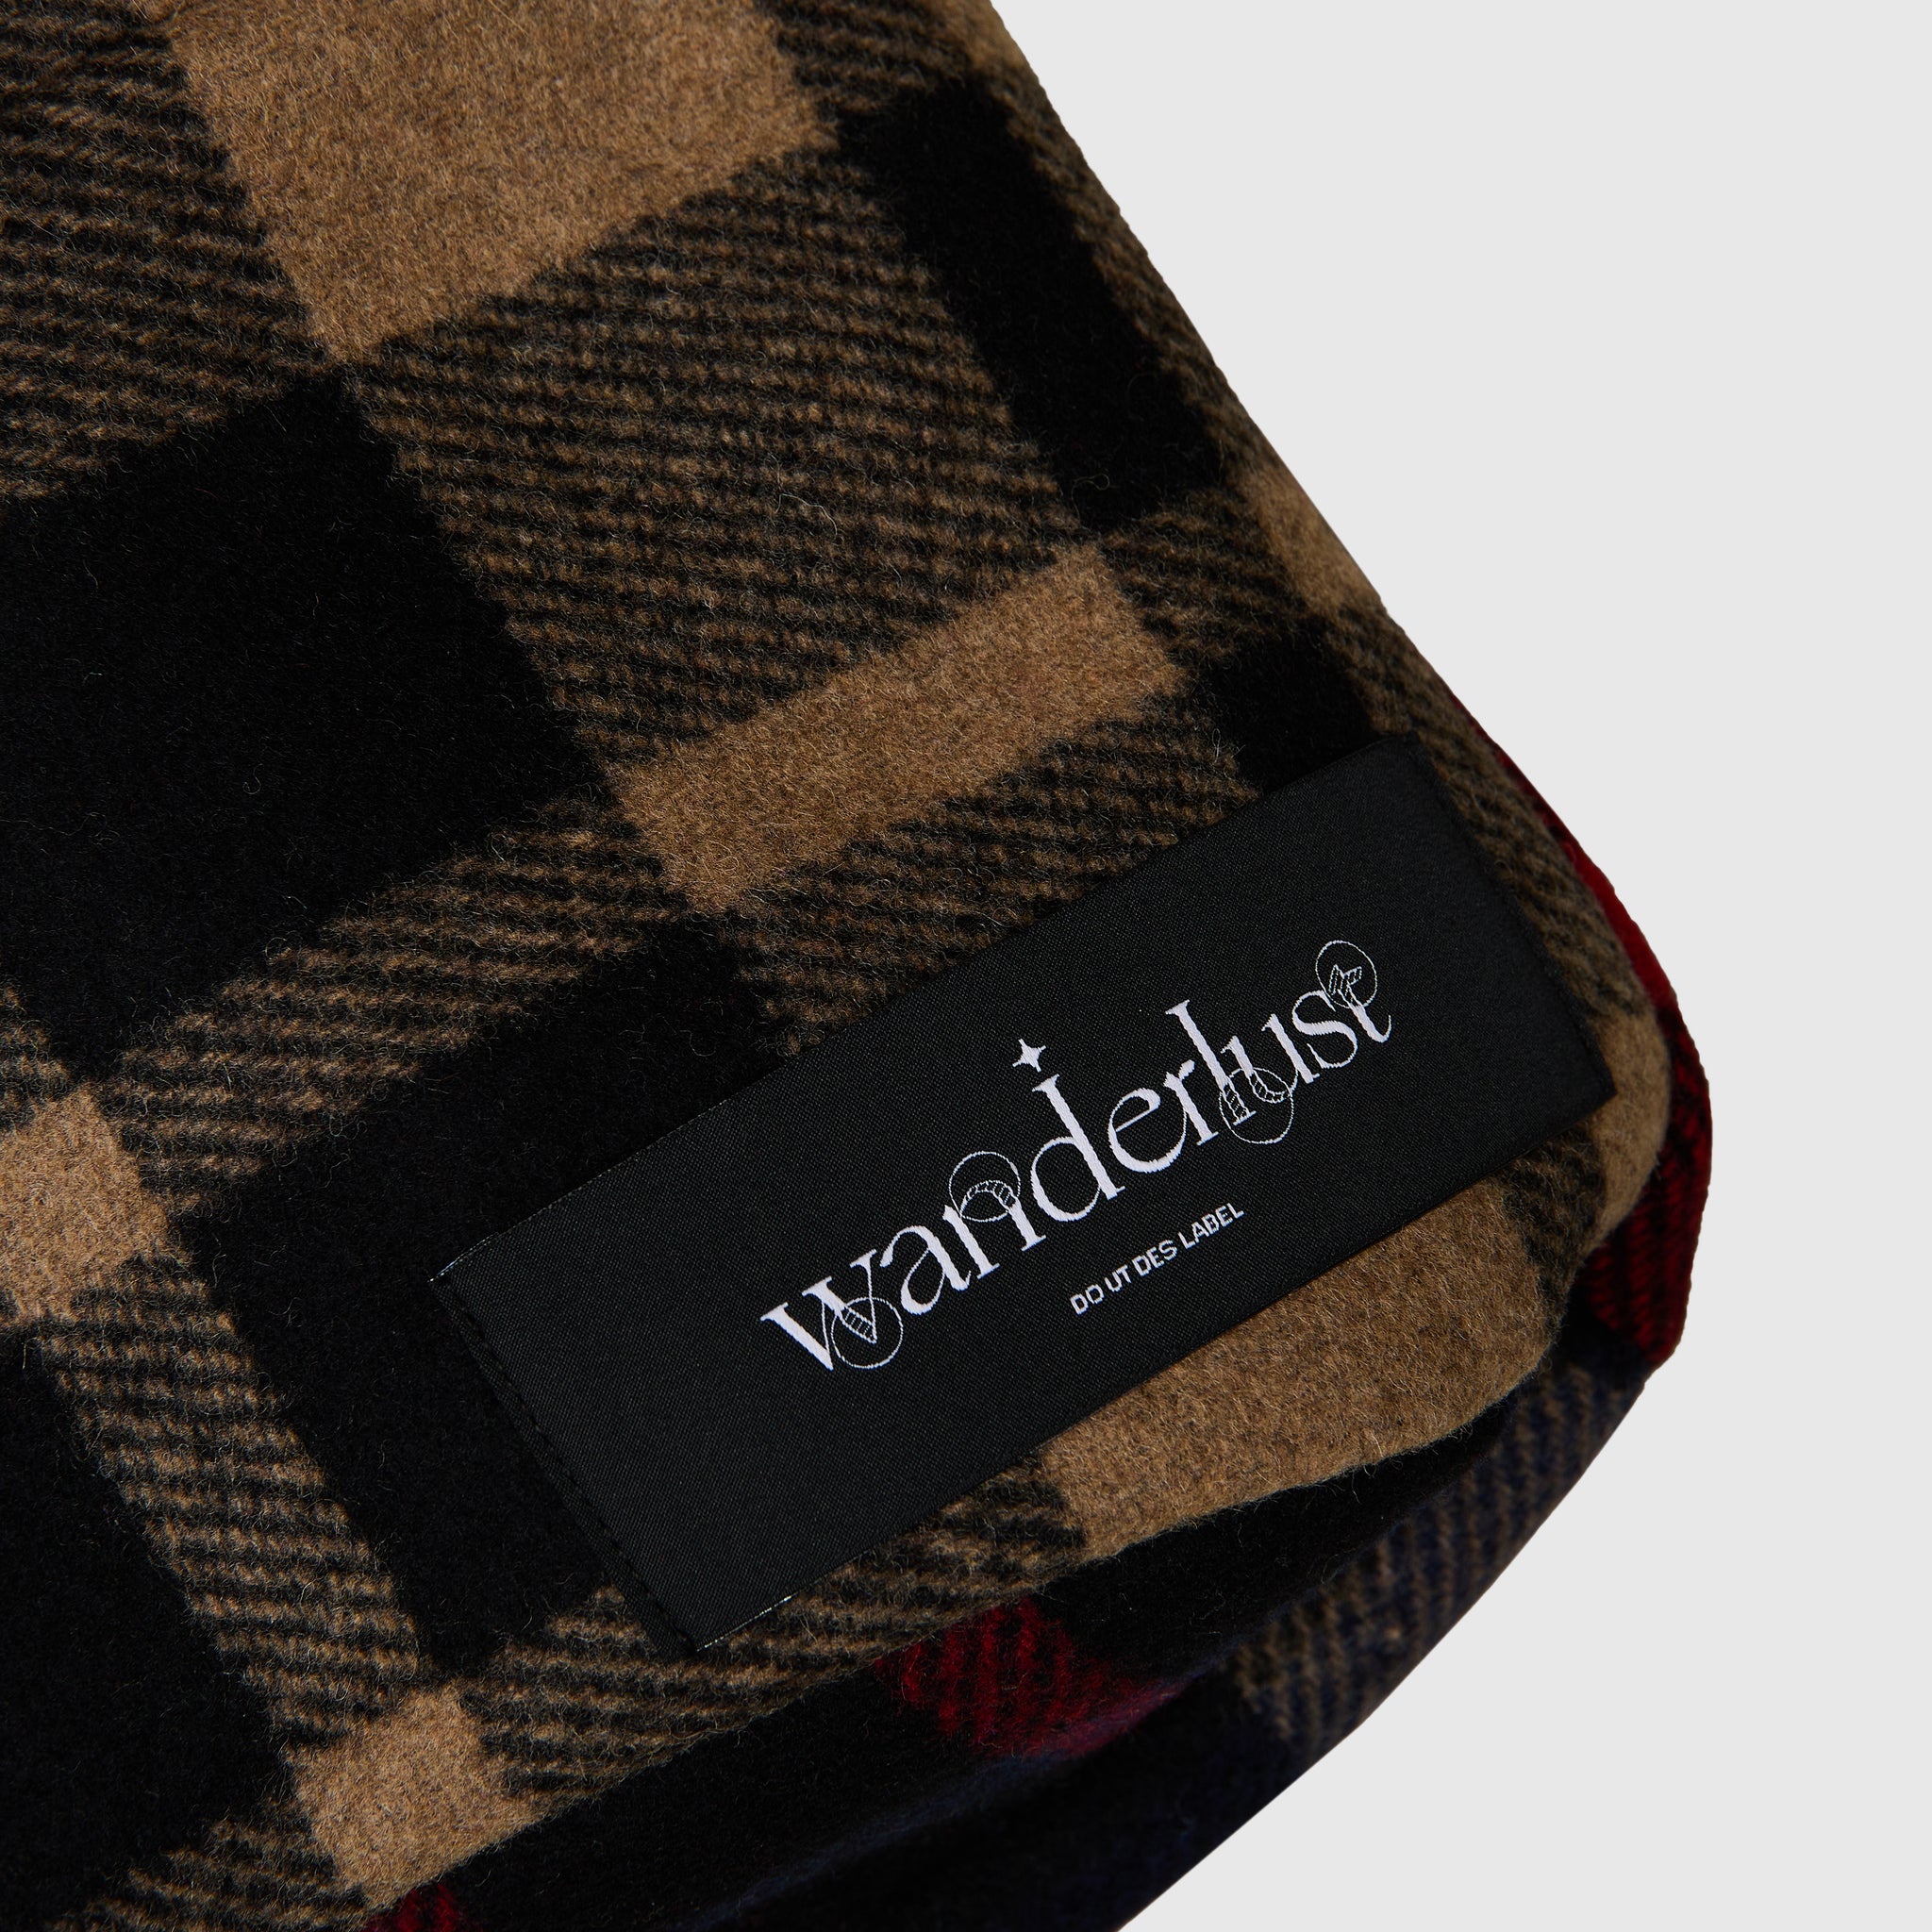 Woolrich™ Shoulder Bag Red/Beige